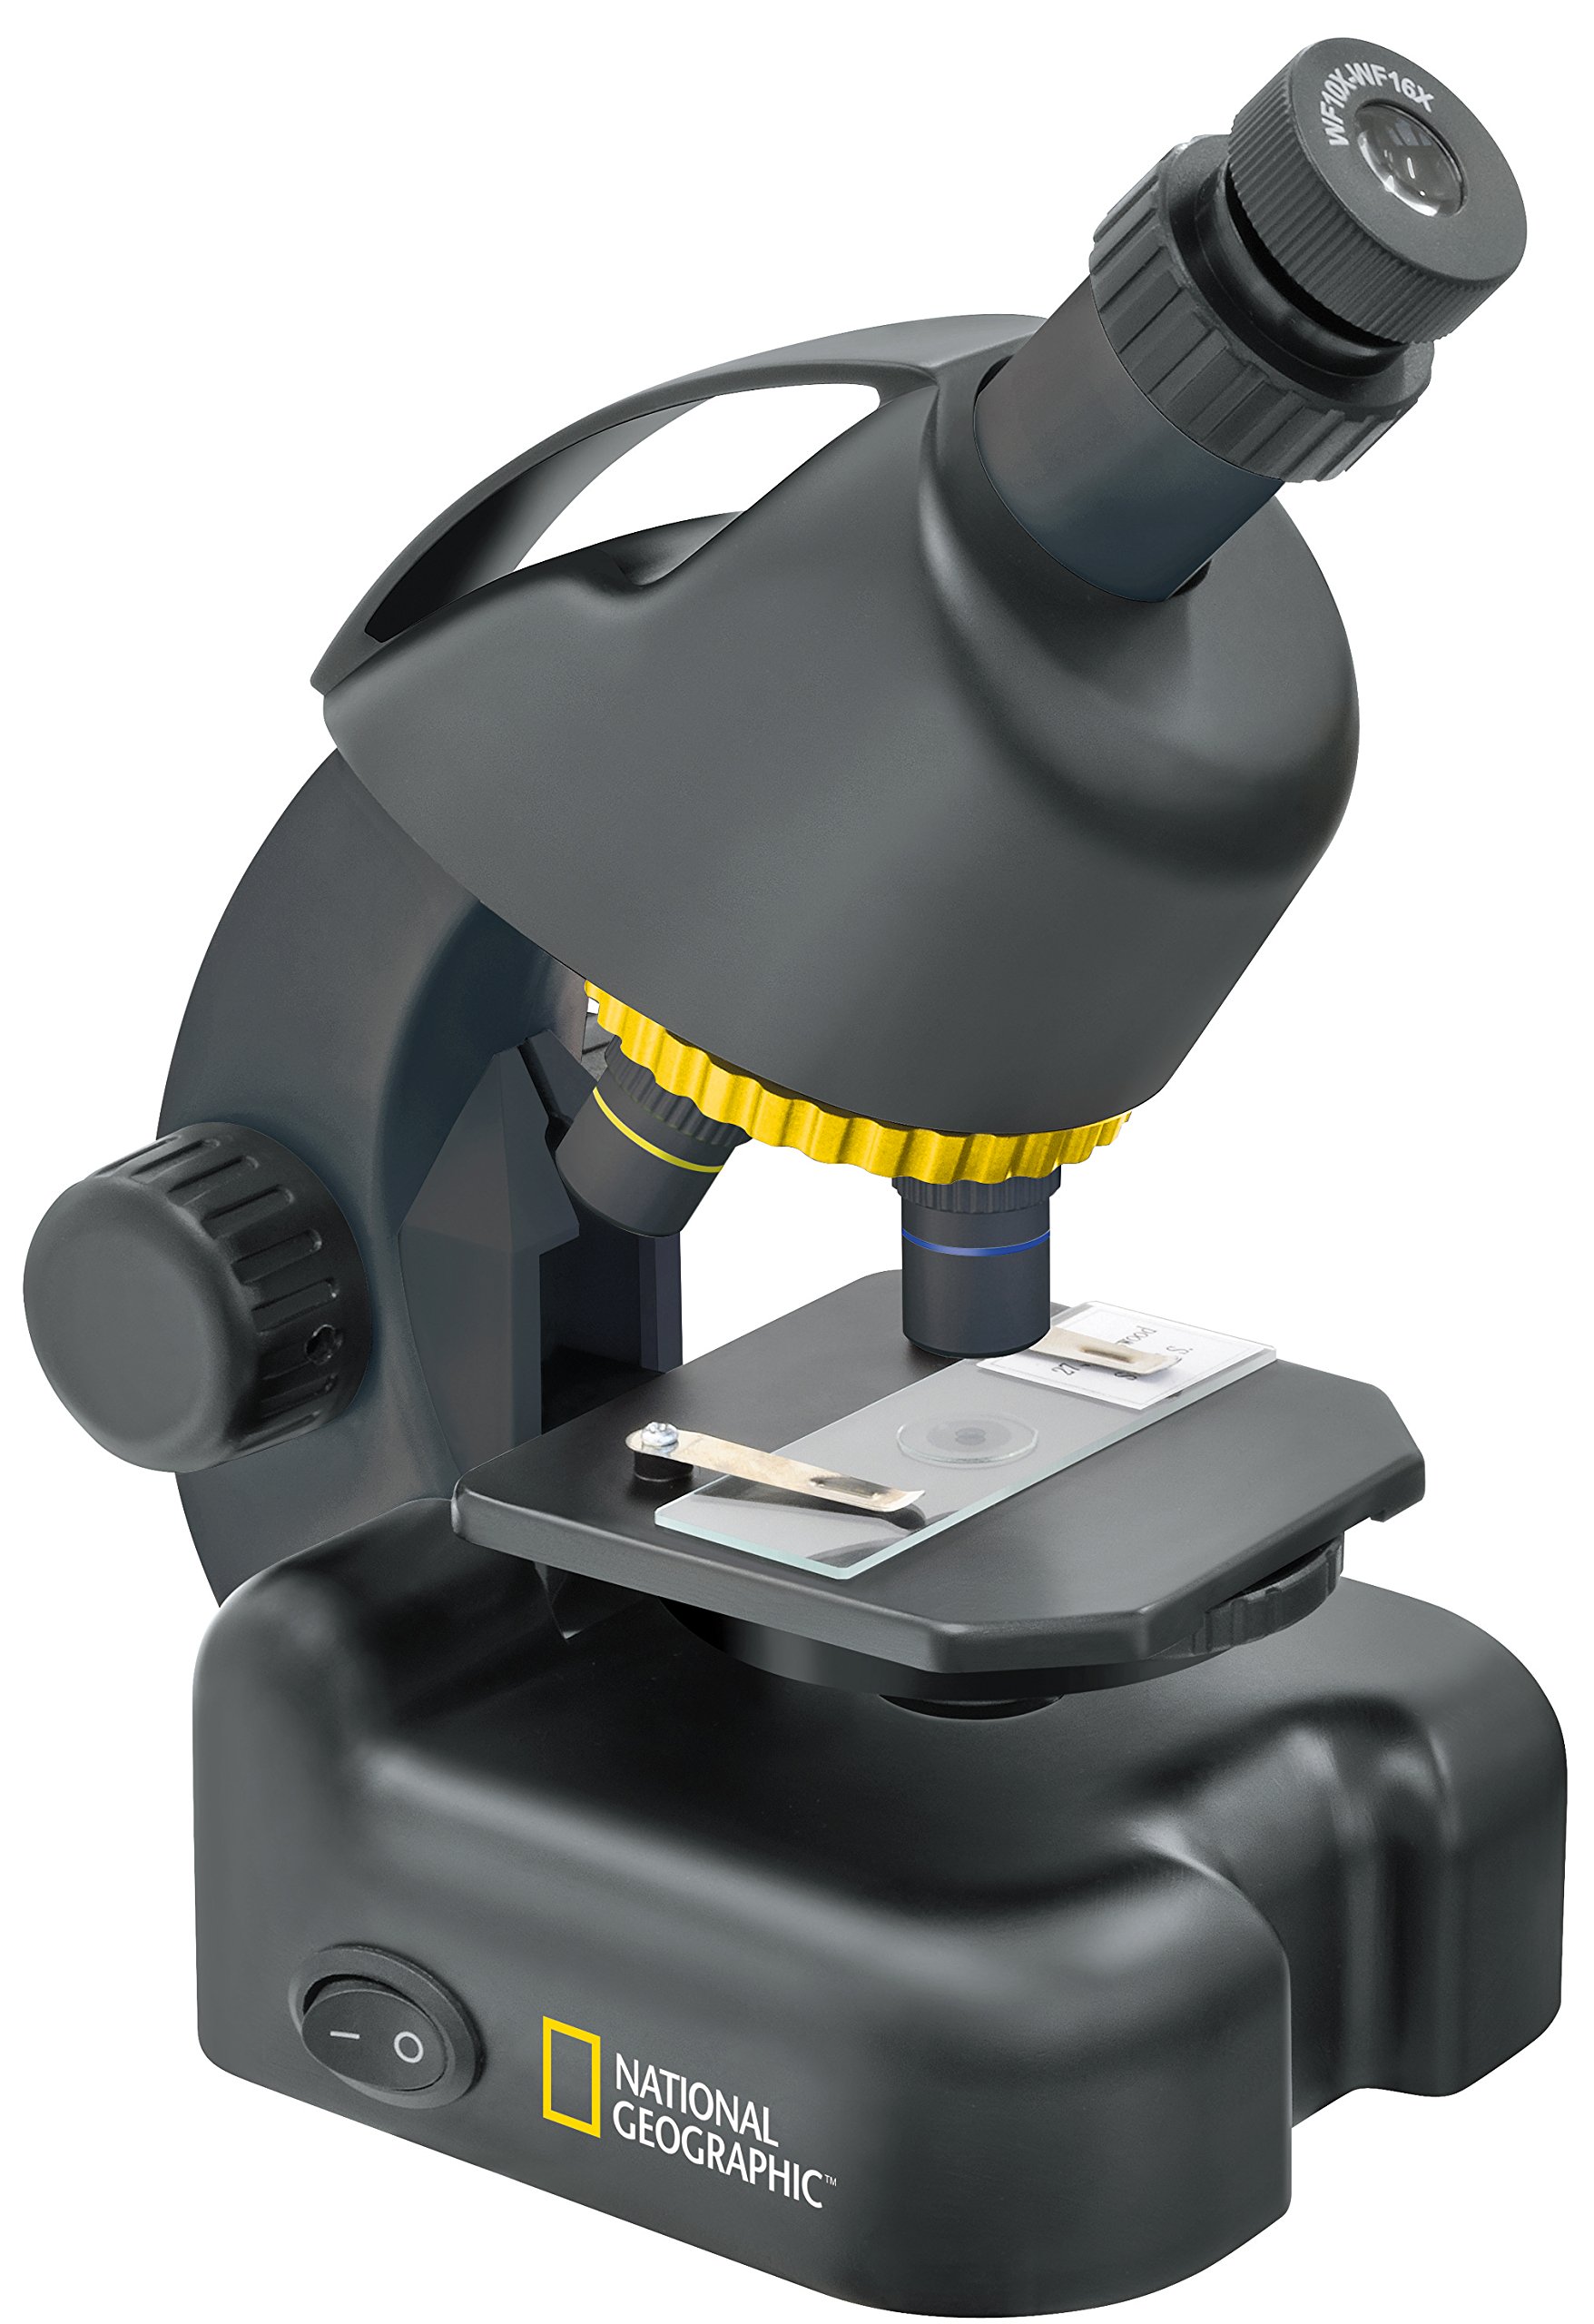 National Geographic 40-640x Mikroskop mit batteriebetriebener LED Durchlichtbeleuchtung, höhenverstellbarem Objekttisch, Smartphone Adapter und umfangreichem Zubehör, schwarz